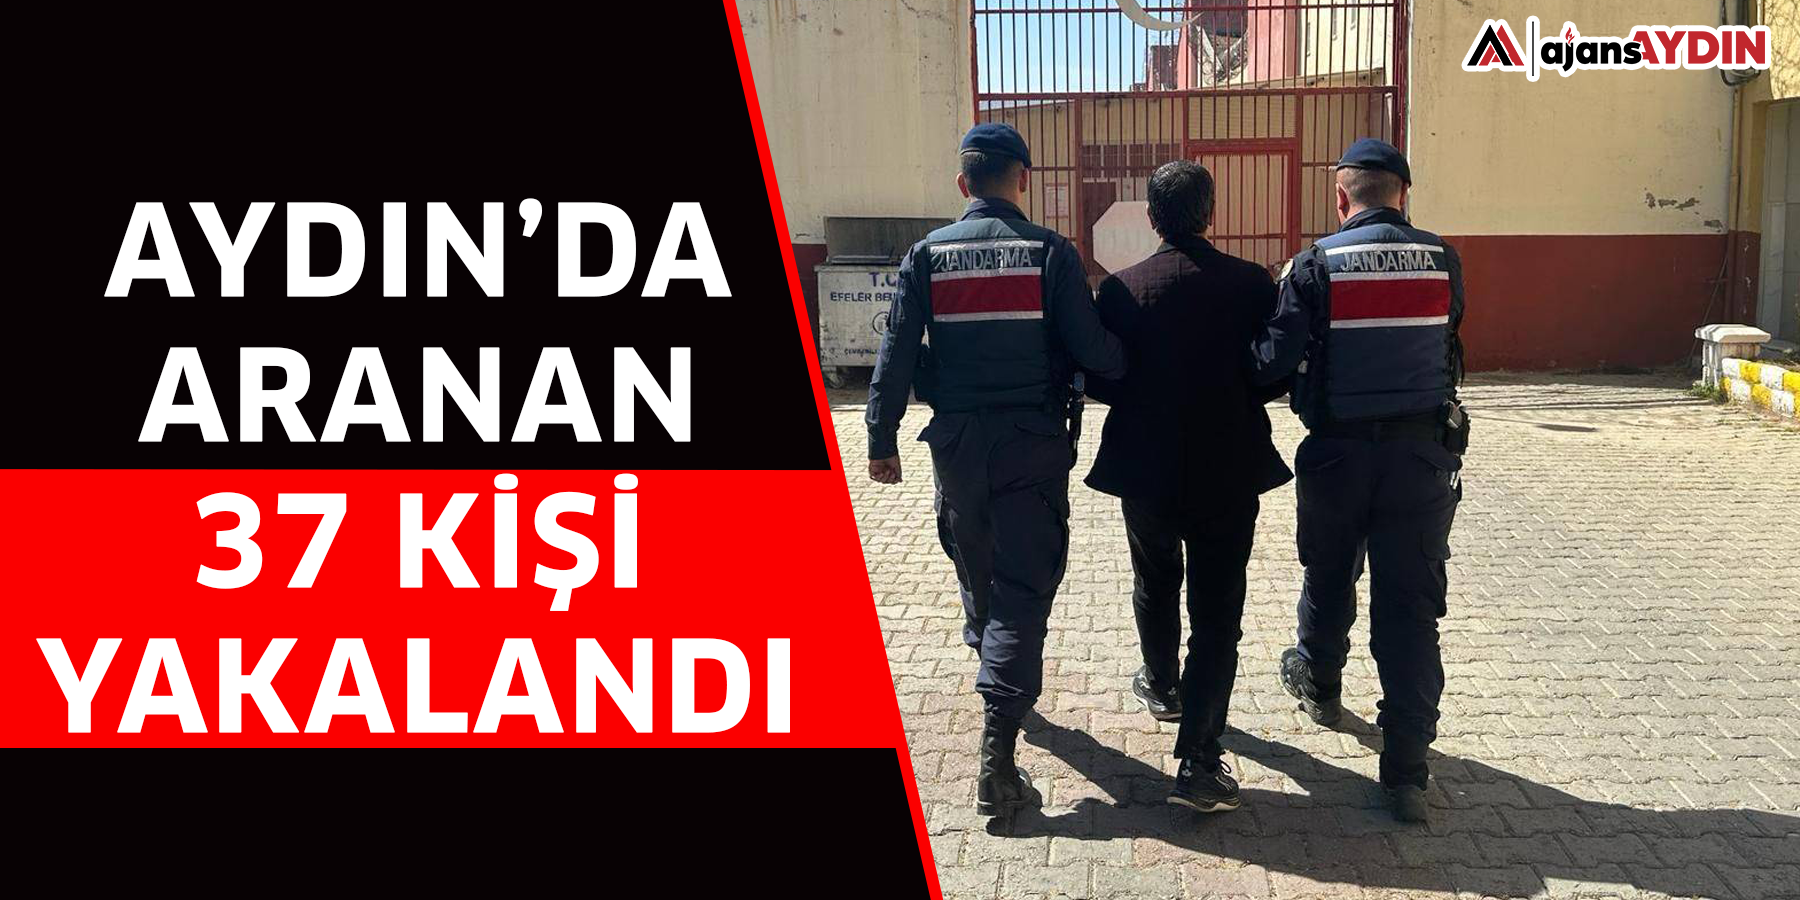 Aydın’da aranan 37 kişi yakalandı